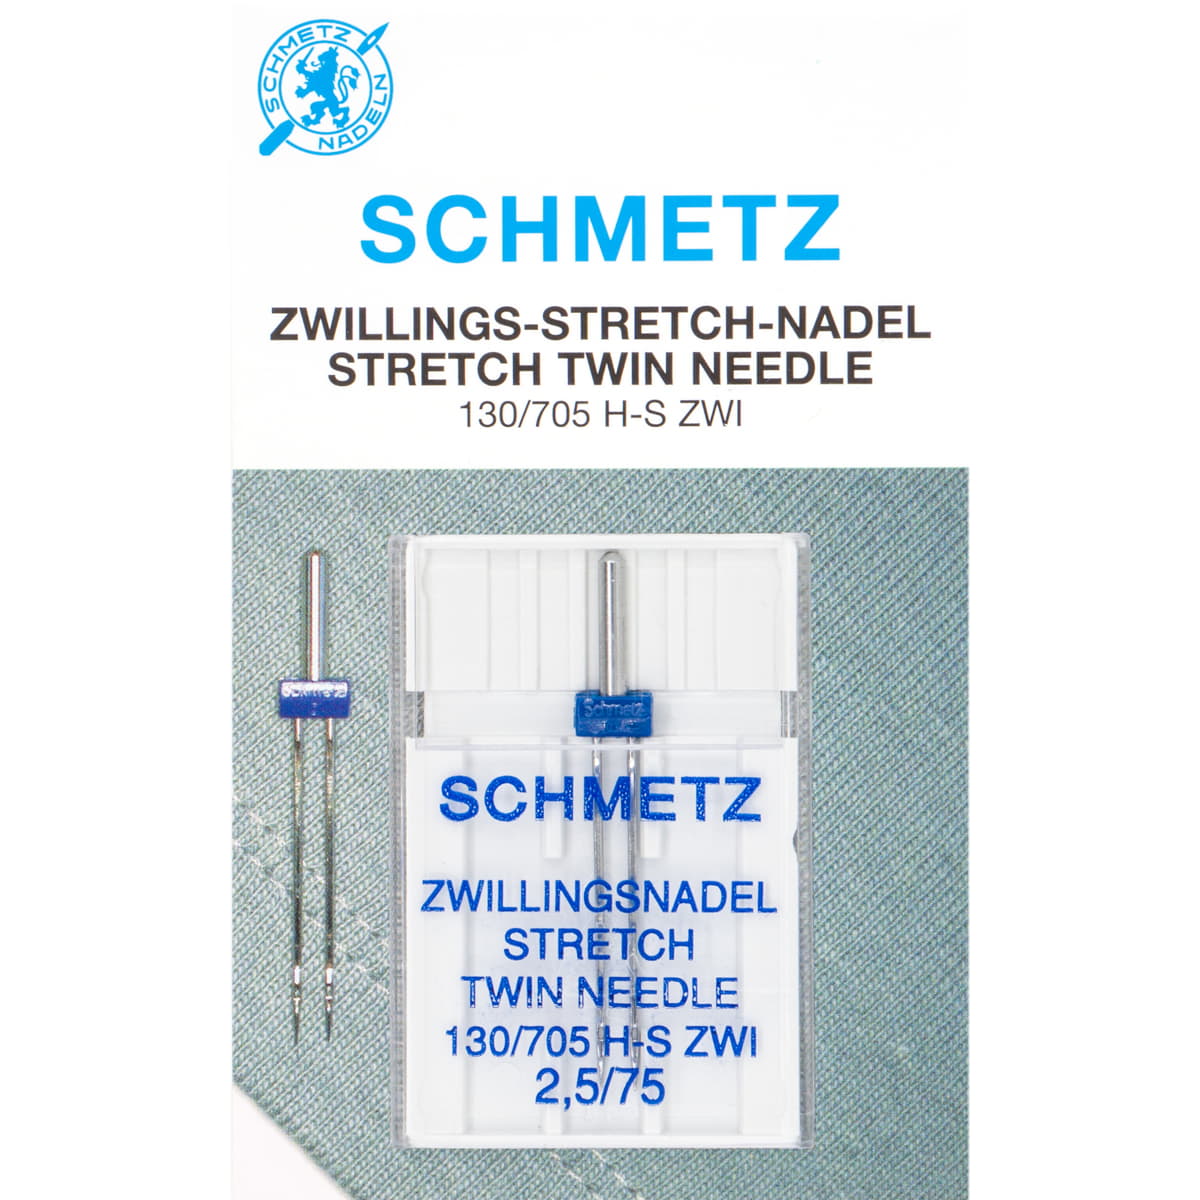 Schmetz tweeling stretch 75 Naaimachine naalden SMZ-TWIN-STRETCH-75-5 4006589001618 - Fourniturenkraam.nl